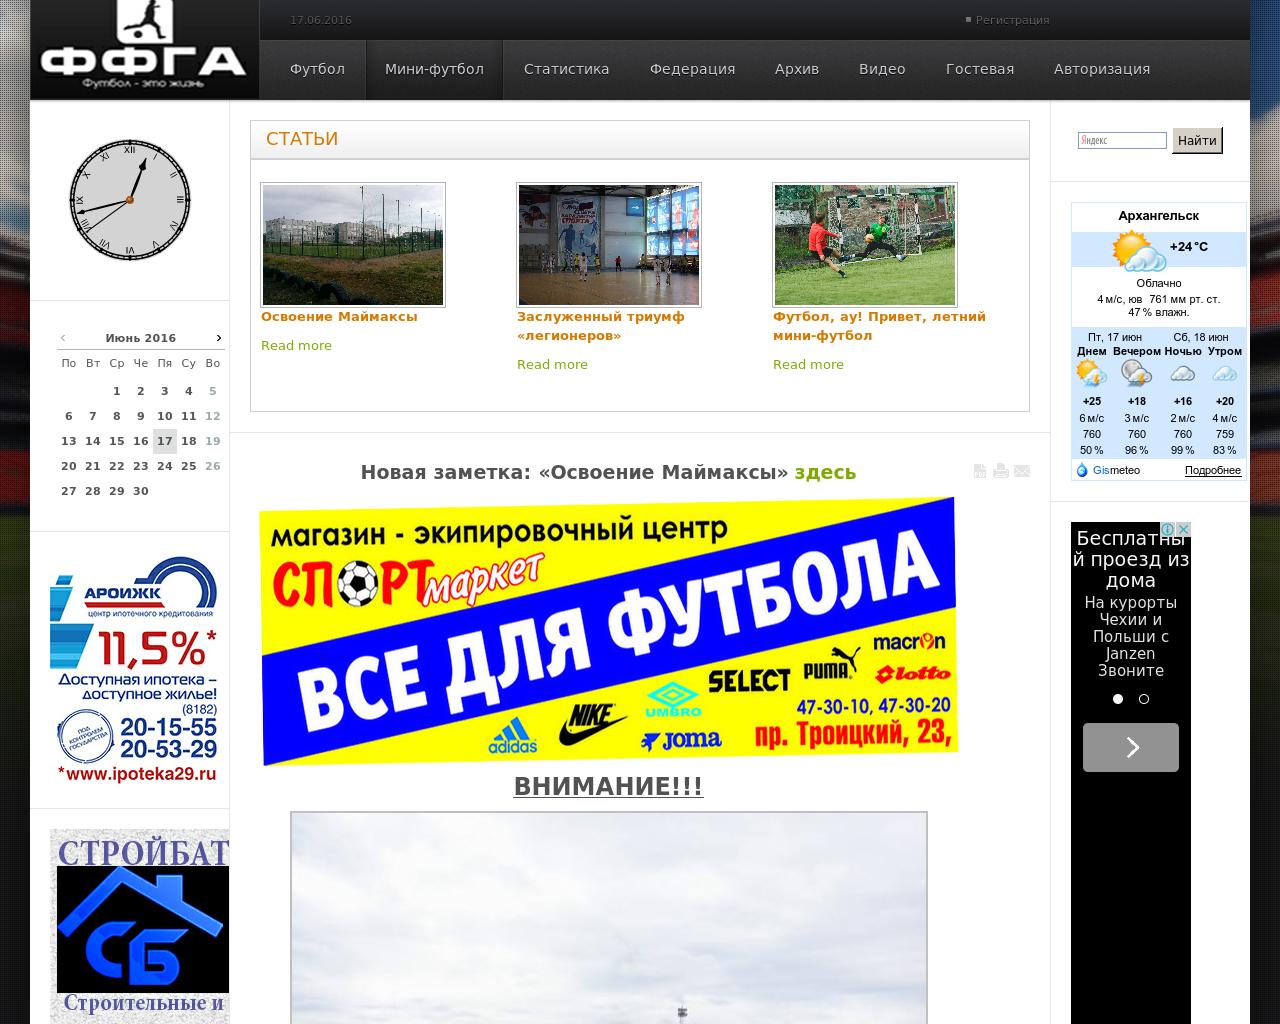 Изображение сайта ffga.ru в разрешении 1280x1024